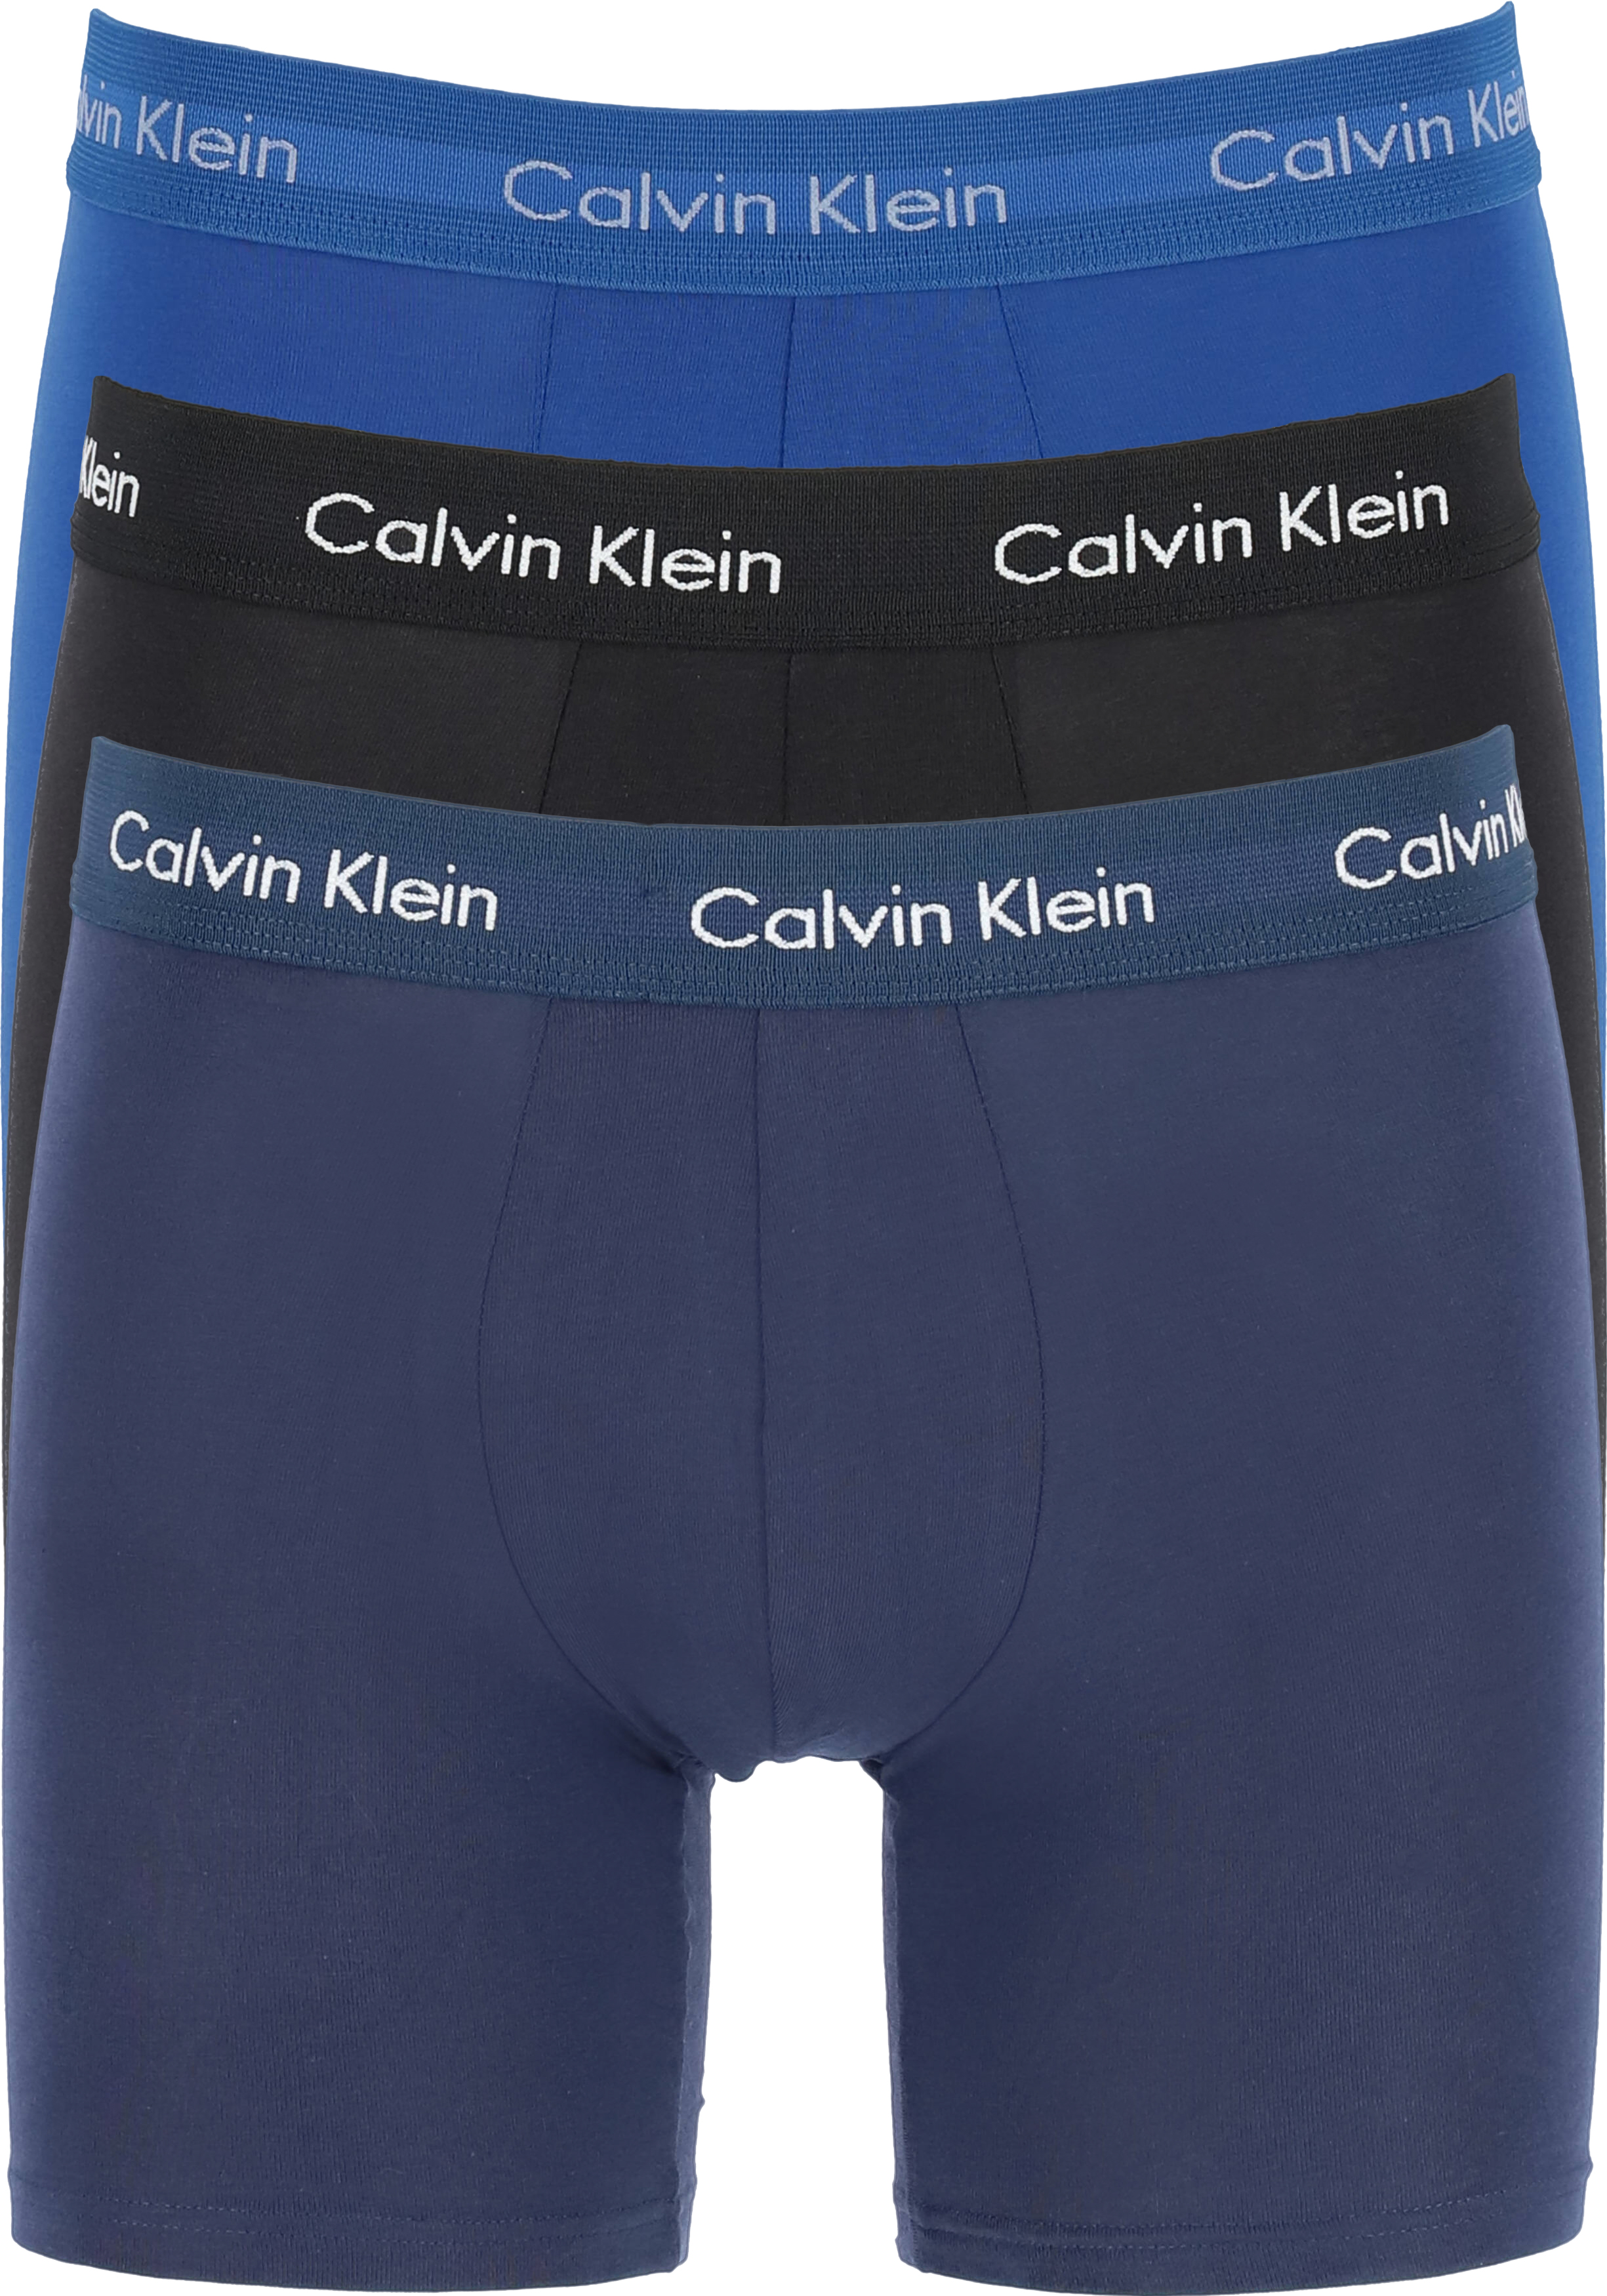 kans Buskruit Afsnijden Calvin Klein Cotton Stretch boxer brief (3-pack), heren boxers extra... -  Shop de nieuwste voorjaarsmode